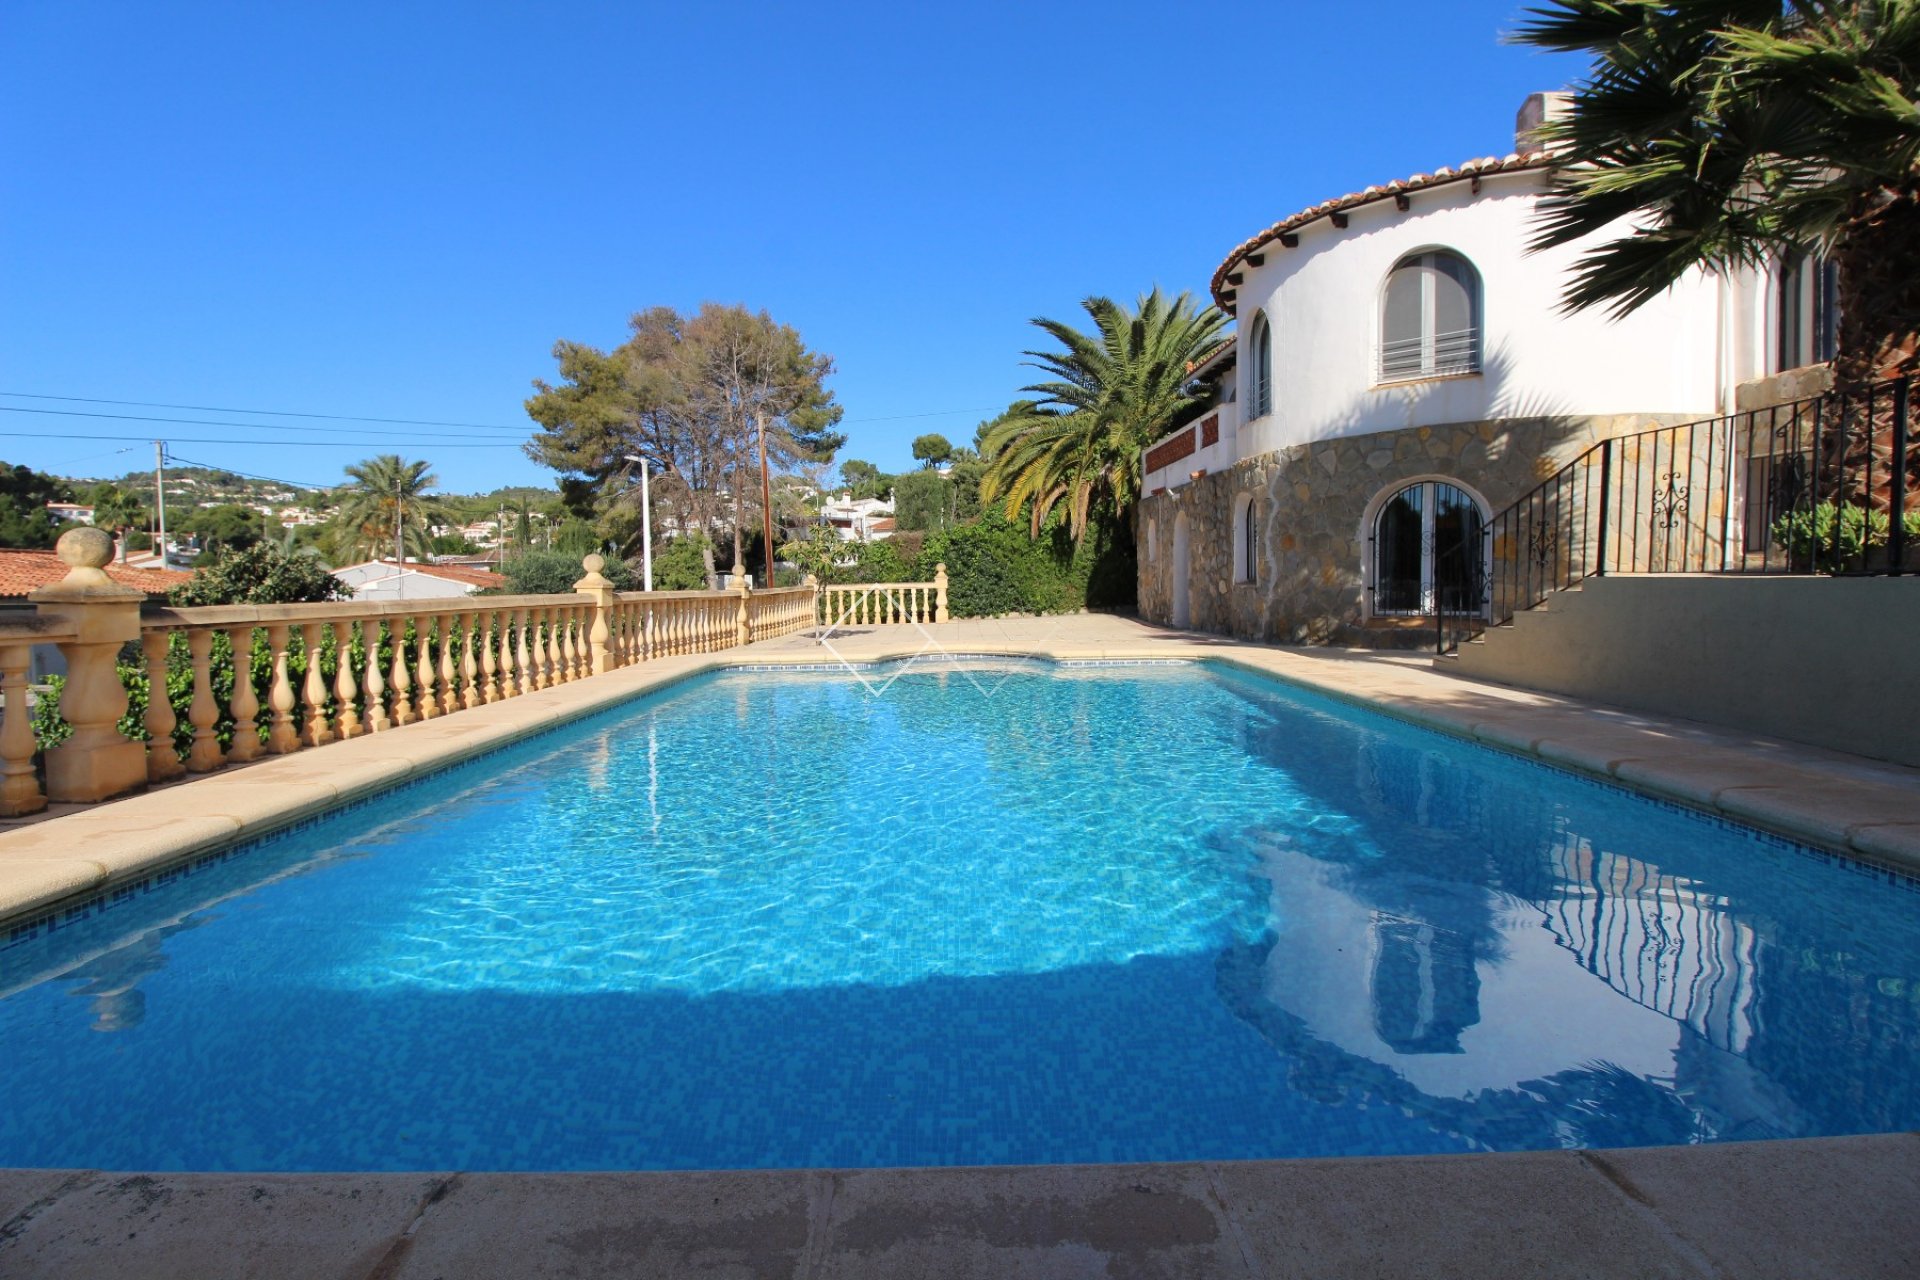 Pool - Renovierte Villa zu verkaufen in Benissa, 400m vom Strand